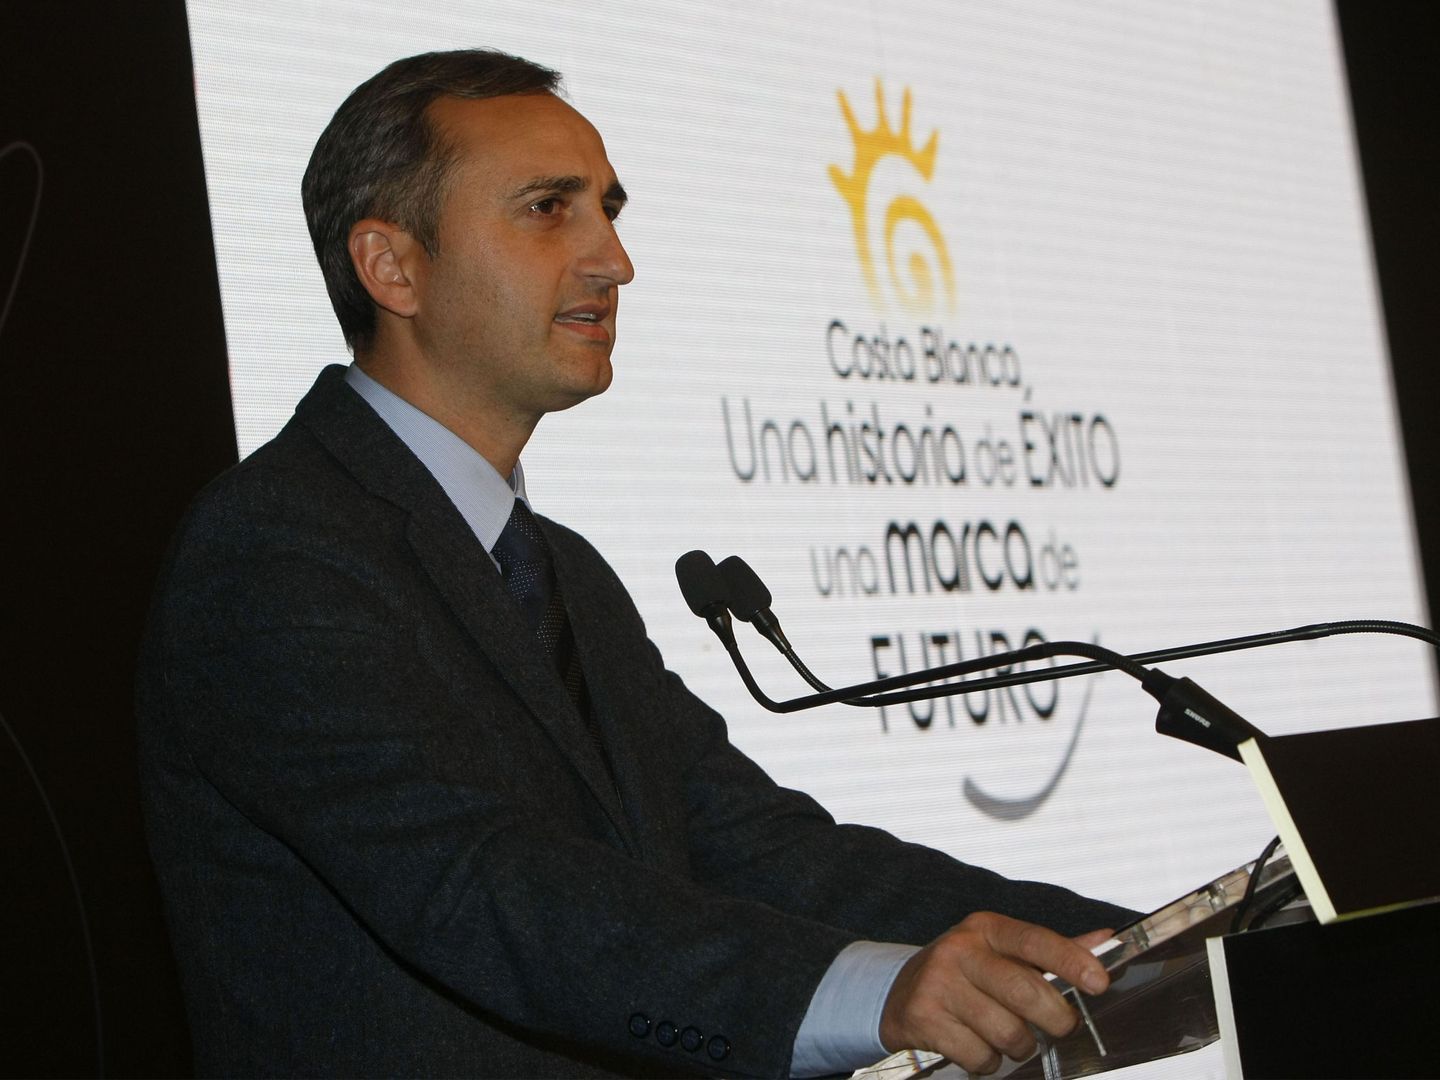 El presidente de la Diputación de Alicante, César Sánchez, cuya institución recurrió el decreto de plurilingüismo de la Generalitat. (EFE)